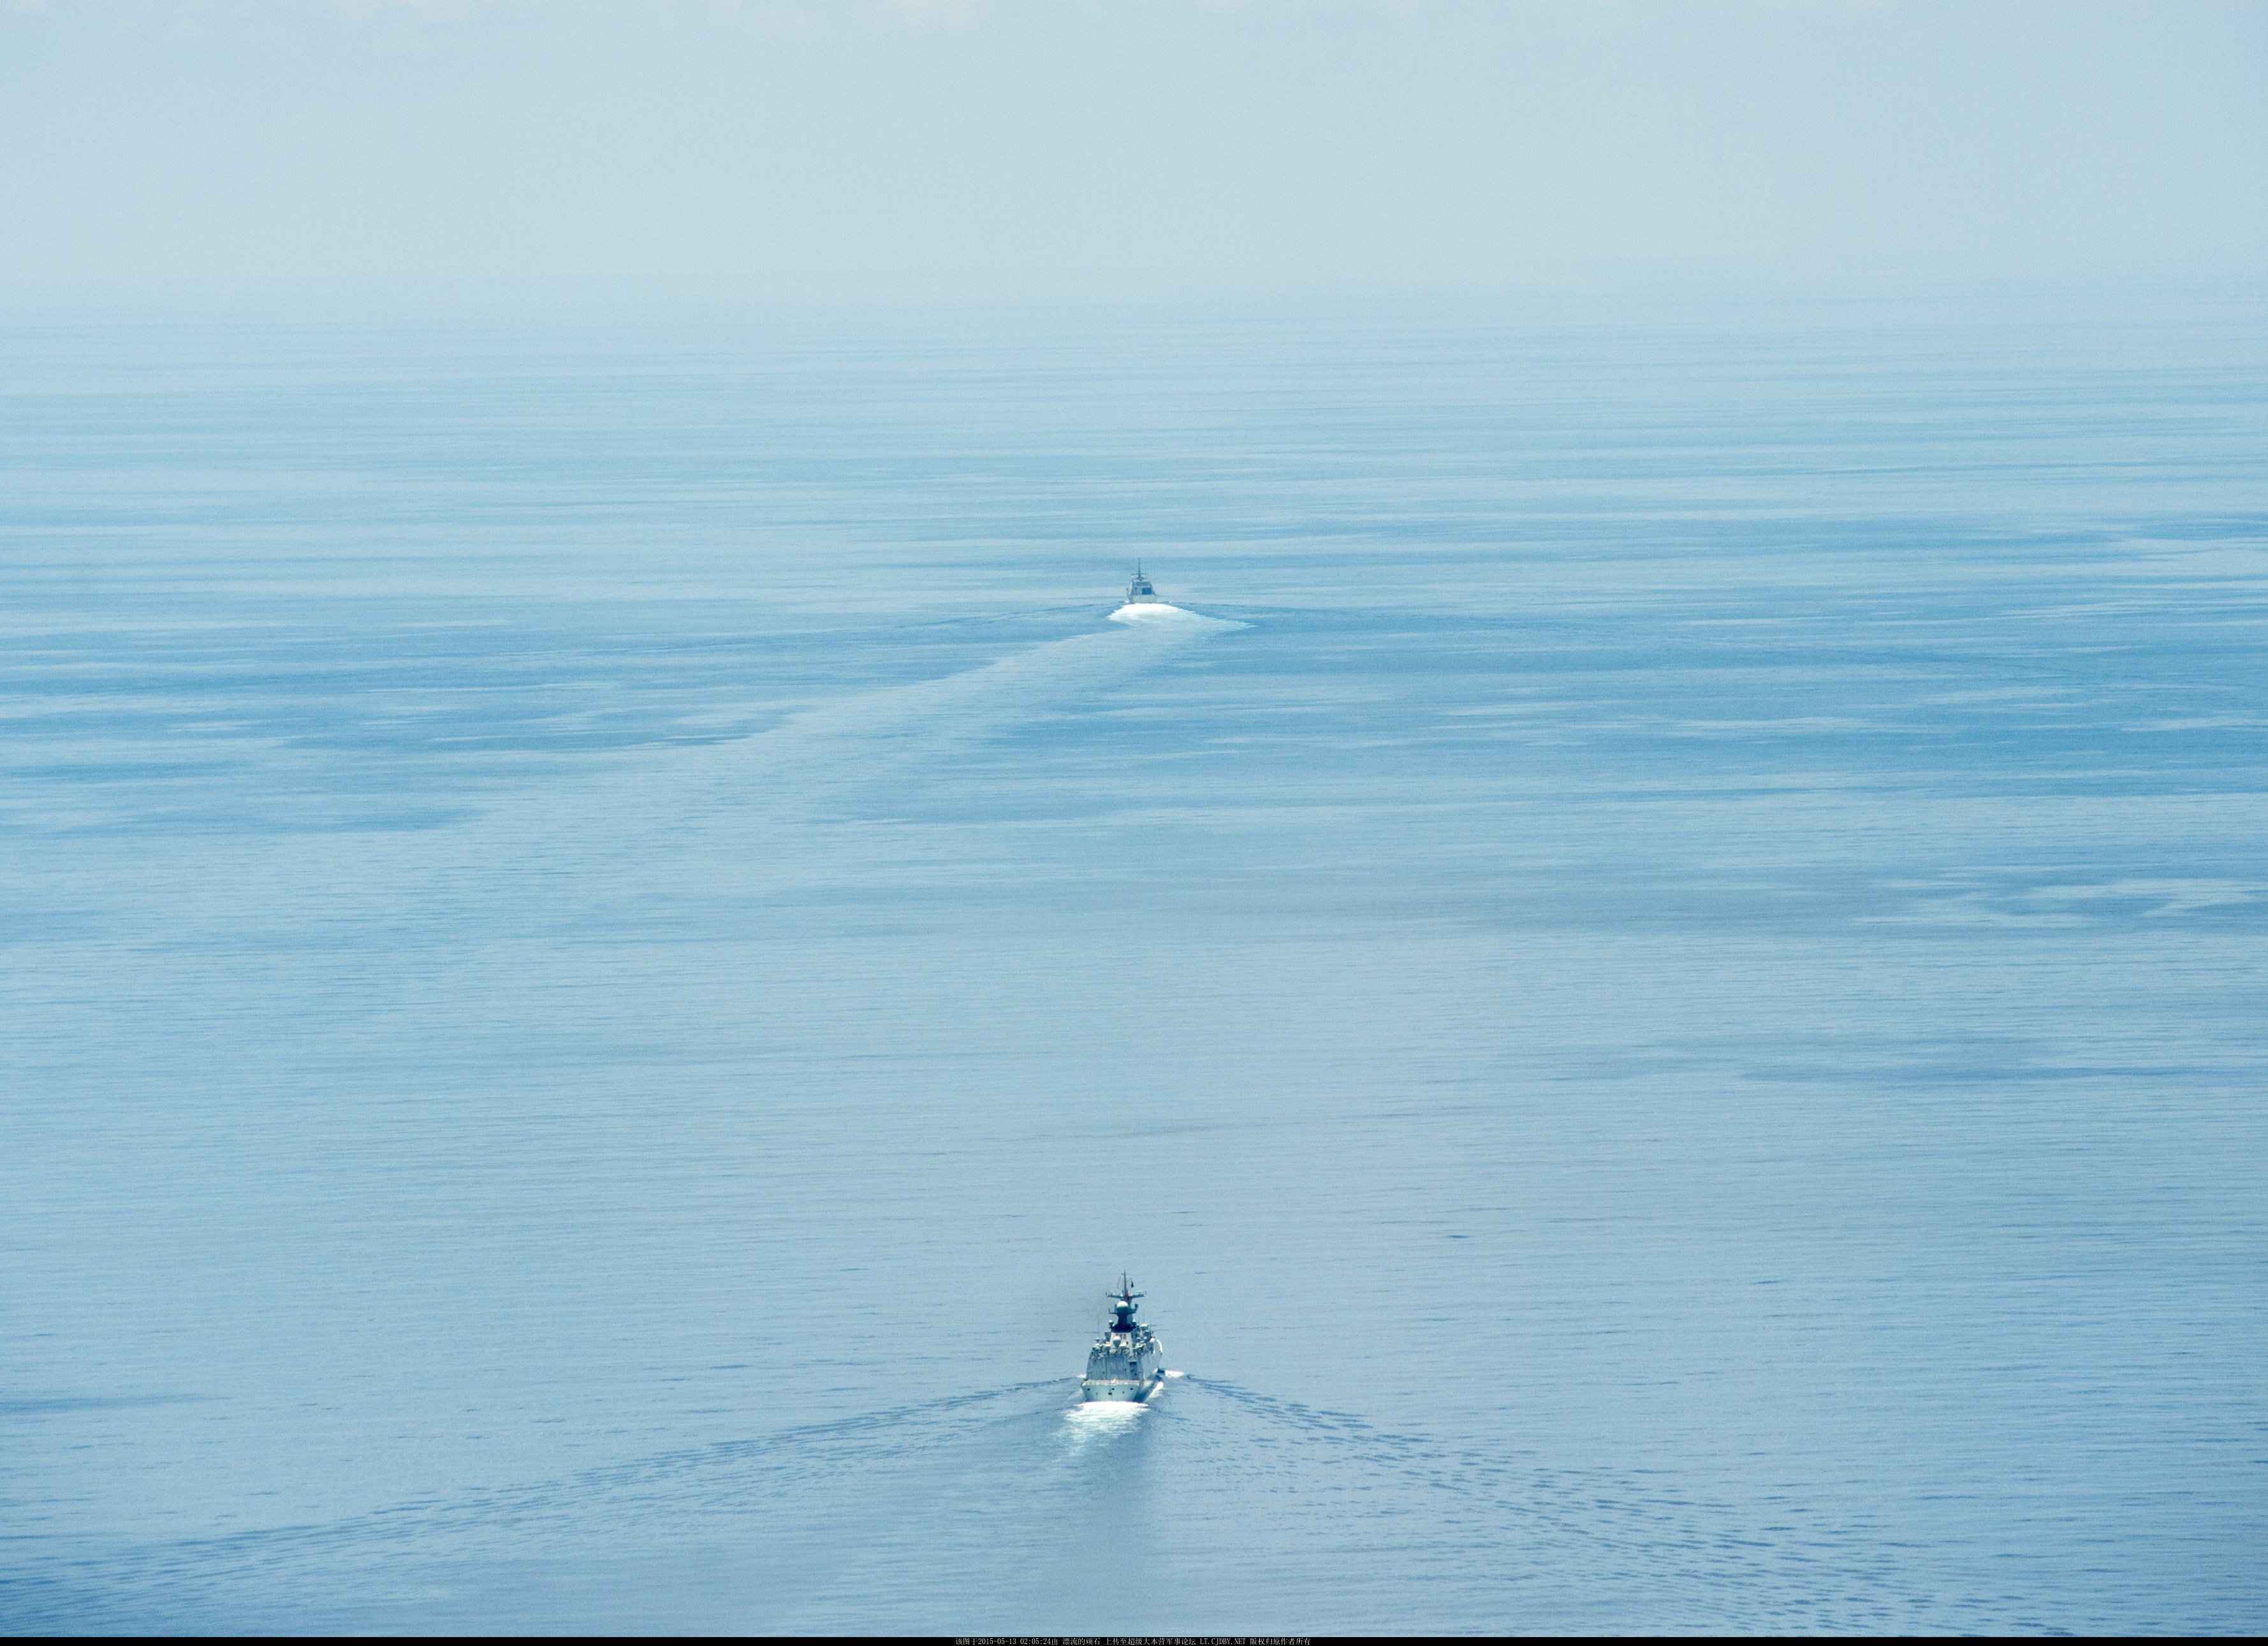 （右键点击图片选择“在新标签页打开”可看超清晰大图）美国海军官网发表后又被撤下的054A“盐城”舰跟踪“沃斯堡”号照片